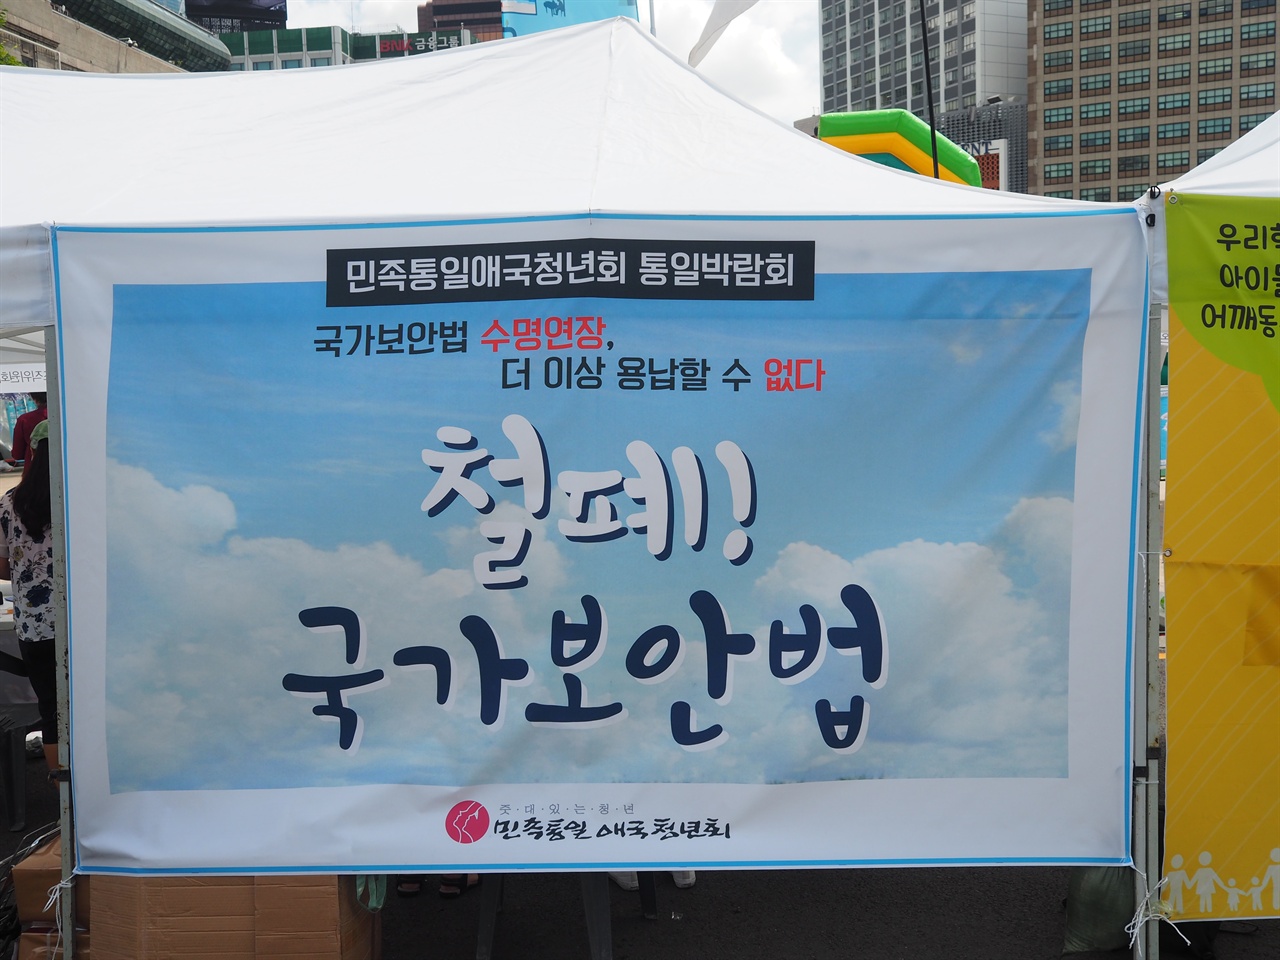 서울시민 통일박람회 참가한 민애청의 부스